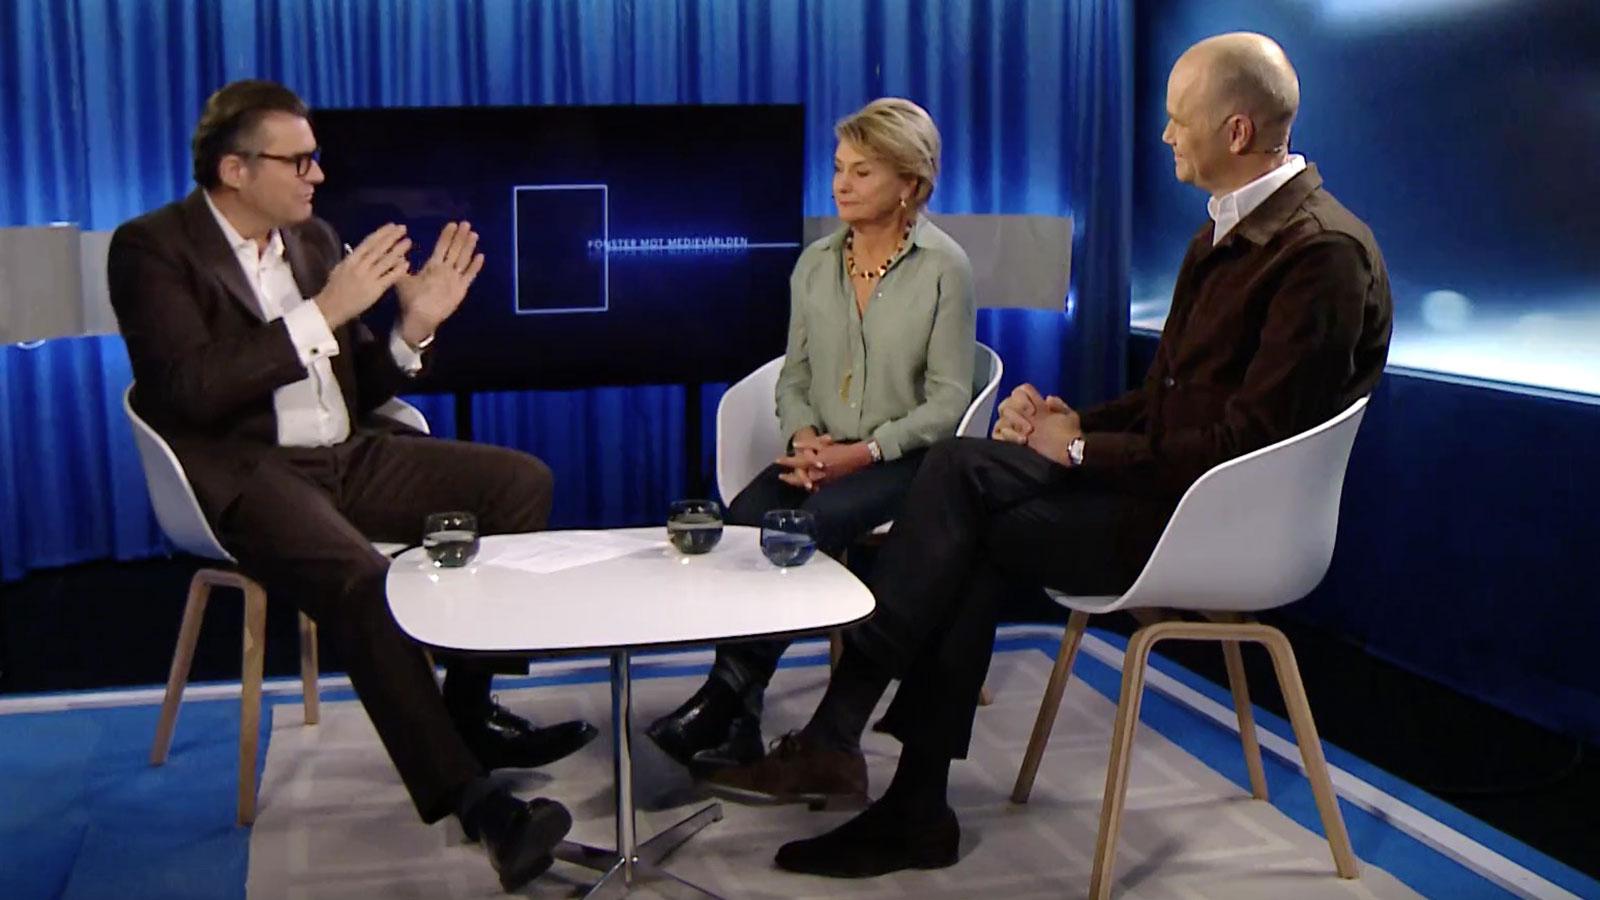 SVT:s mediedirektör Jan Helin, förre vd:n Eva Hamilton och TV4:s vd Casten Almqvist i ”Fönster mot medievärlden”.